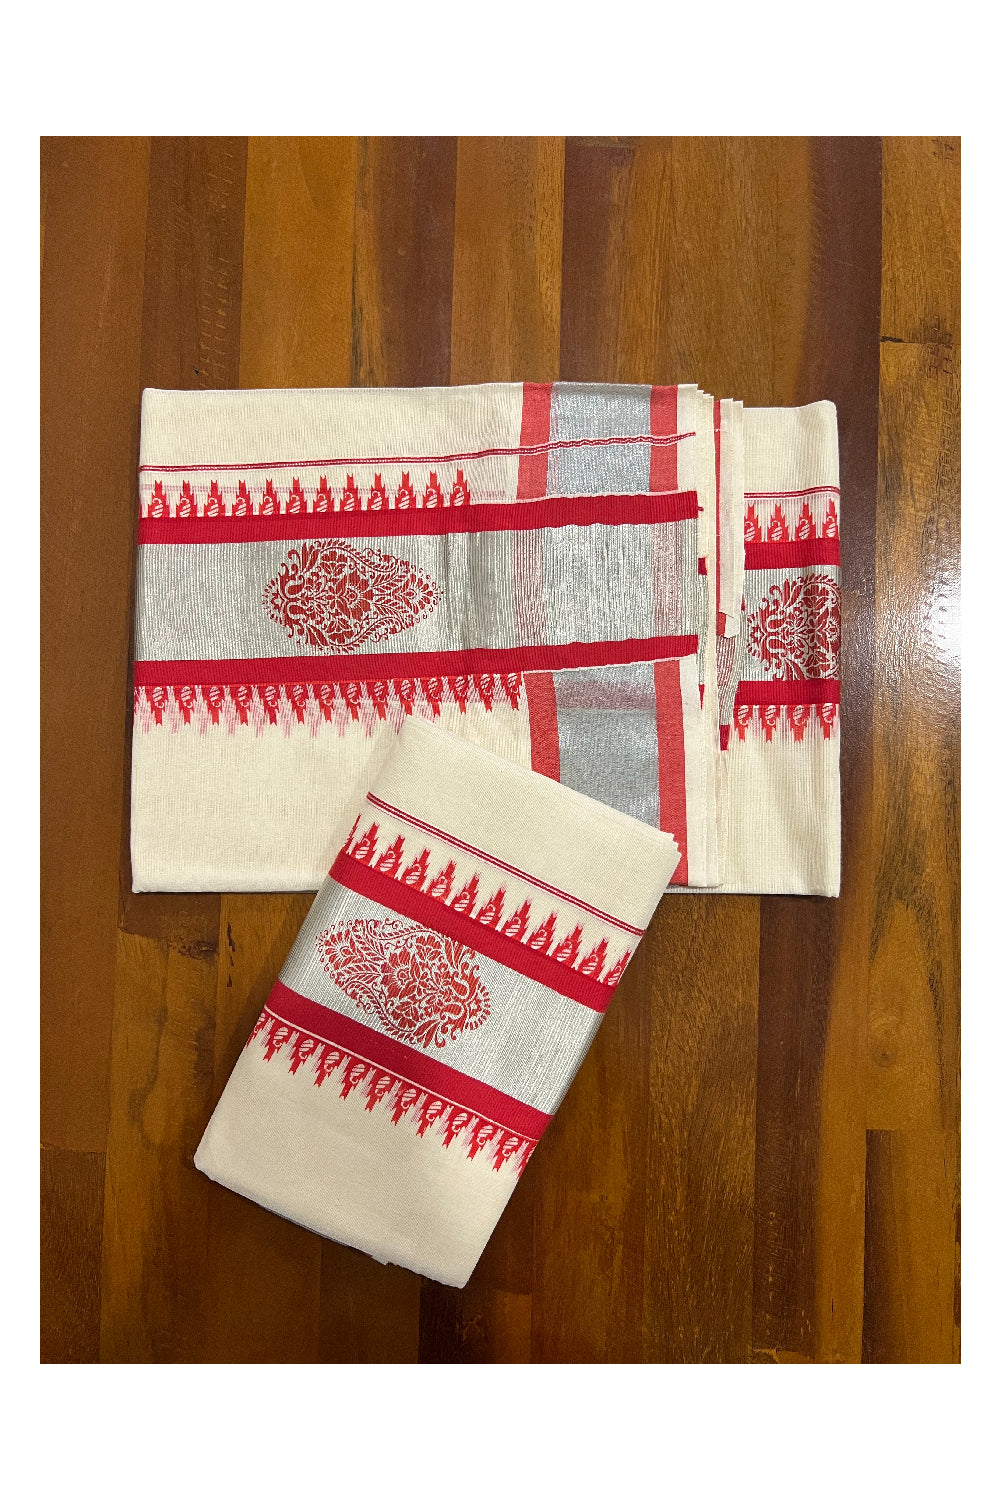 Kerala Cotton Set Mundu (Mundum Neriyathum) with Silver Kasavu and Red Block Prints on Border 2.80 Mtrs